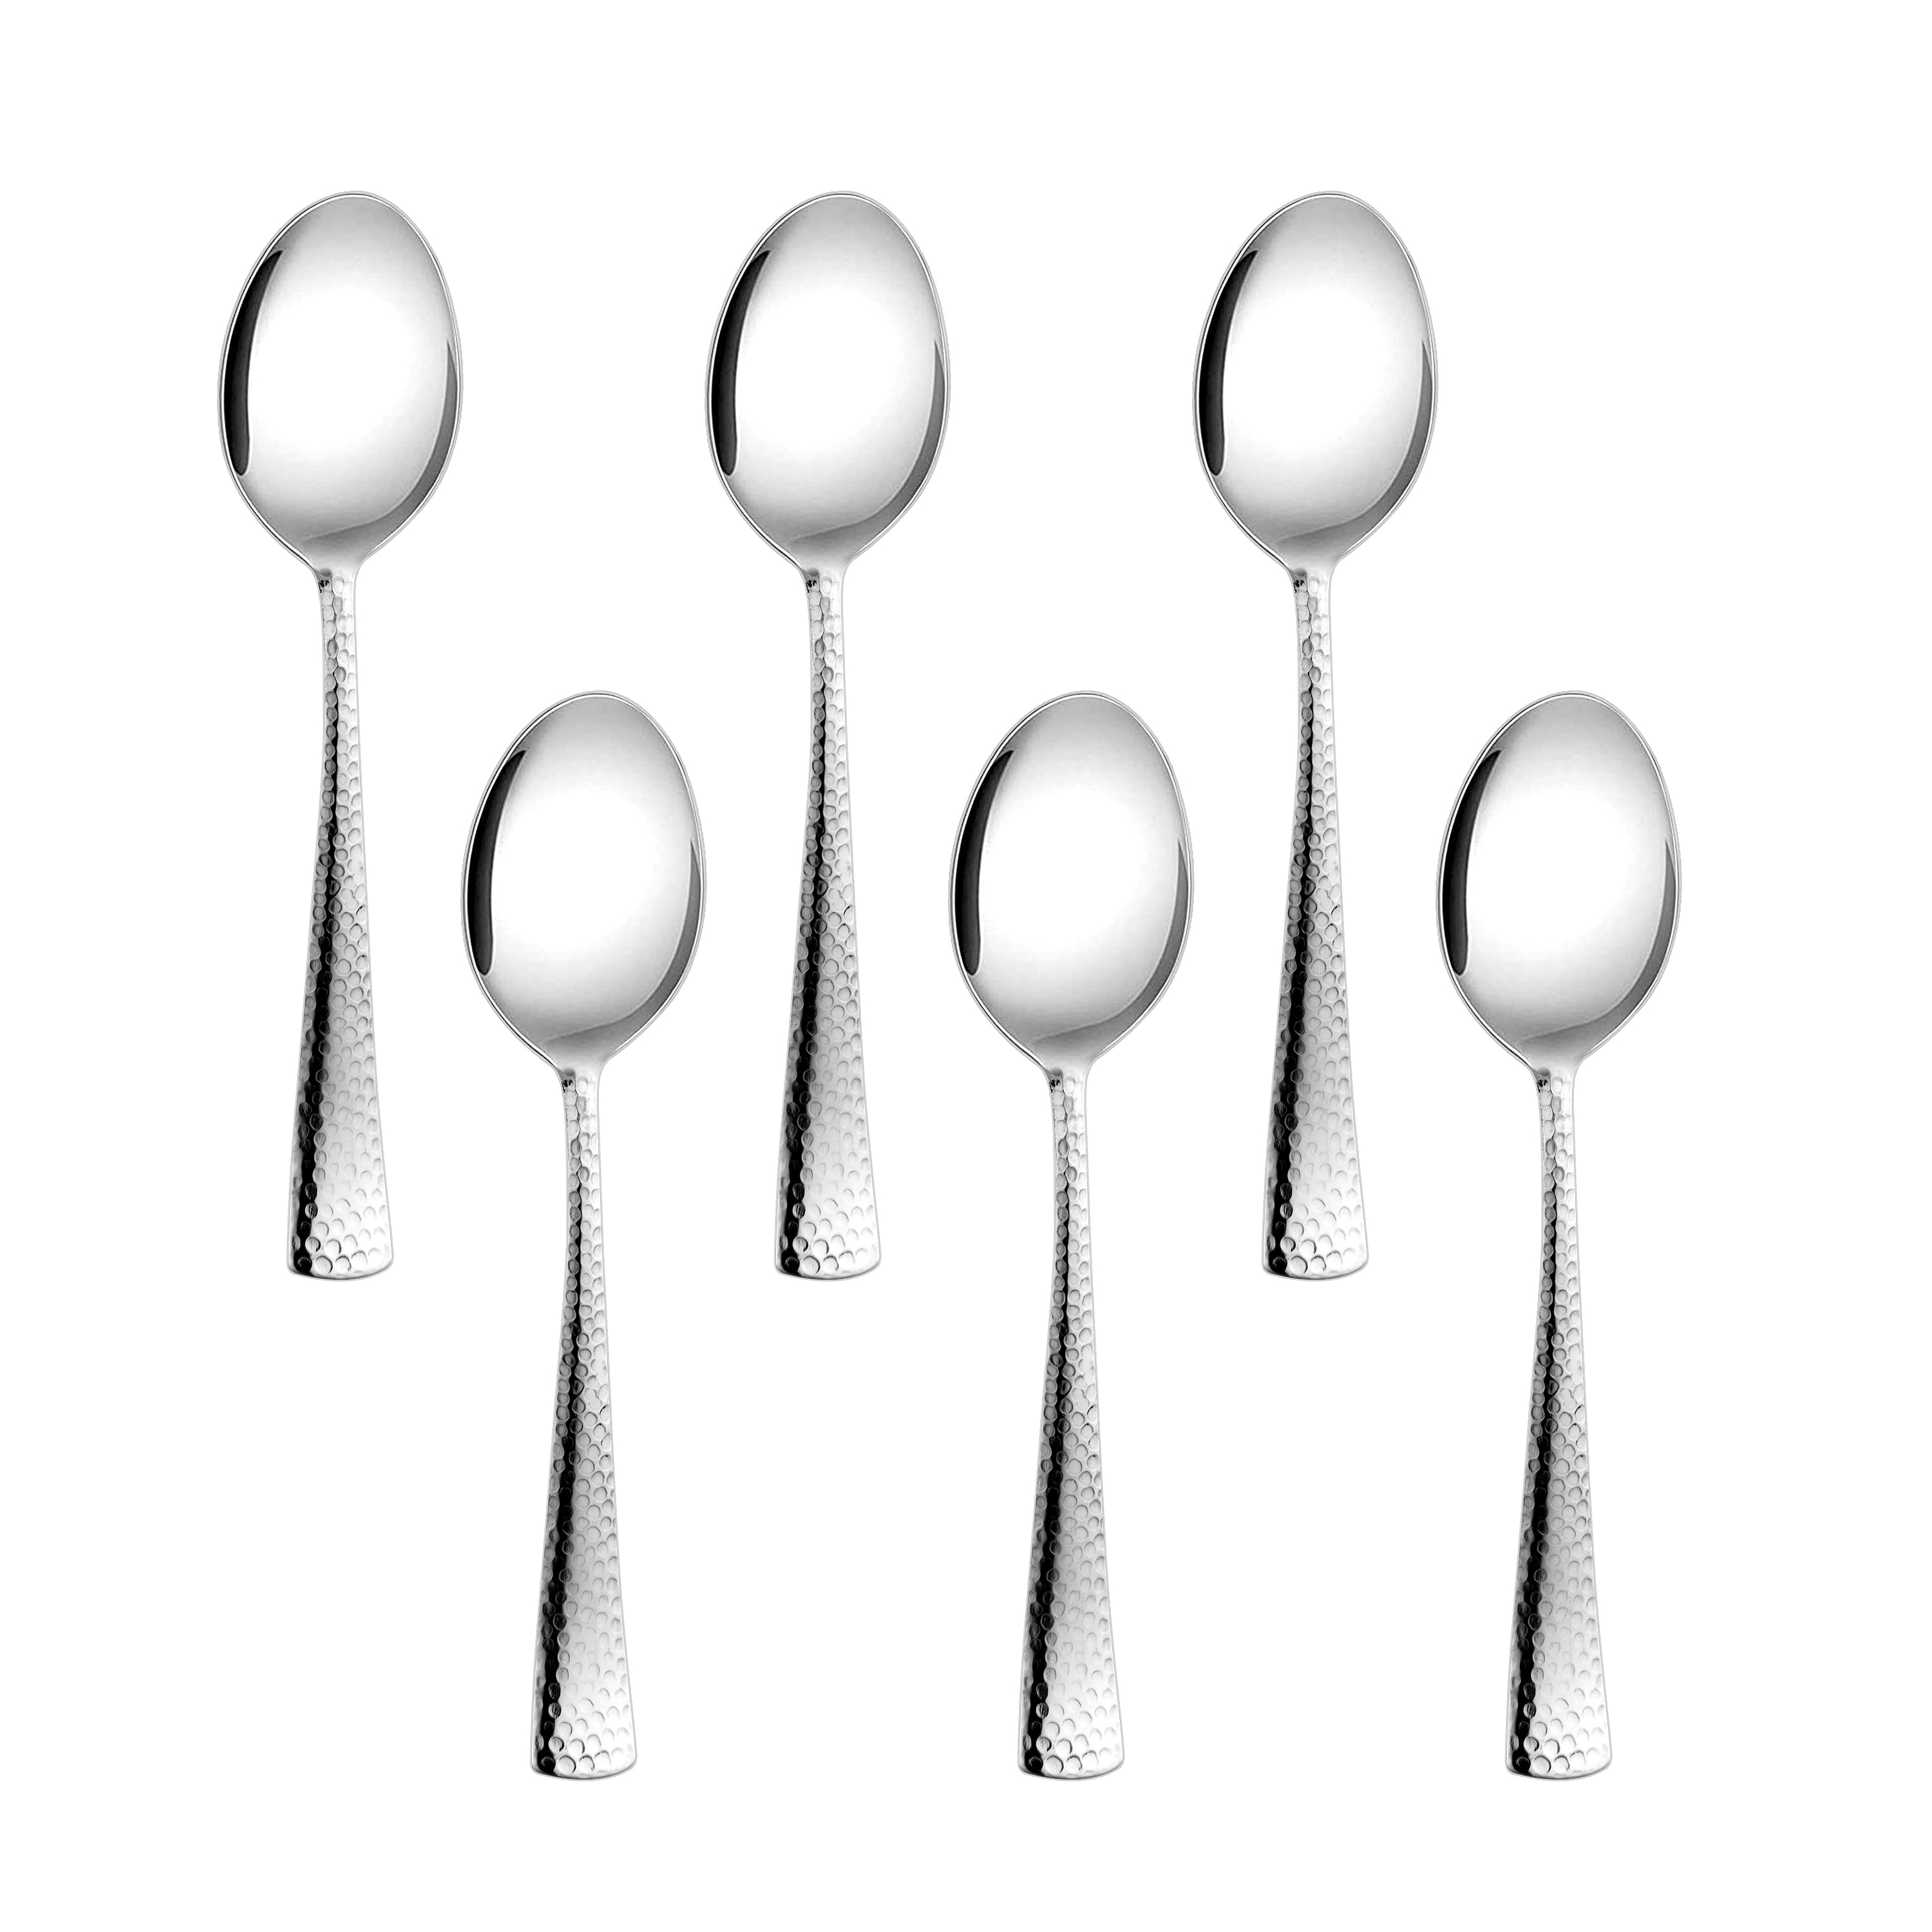 Arias Vintage Dinner Spoon Set of 6 (Silver)